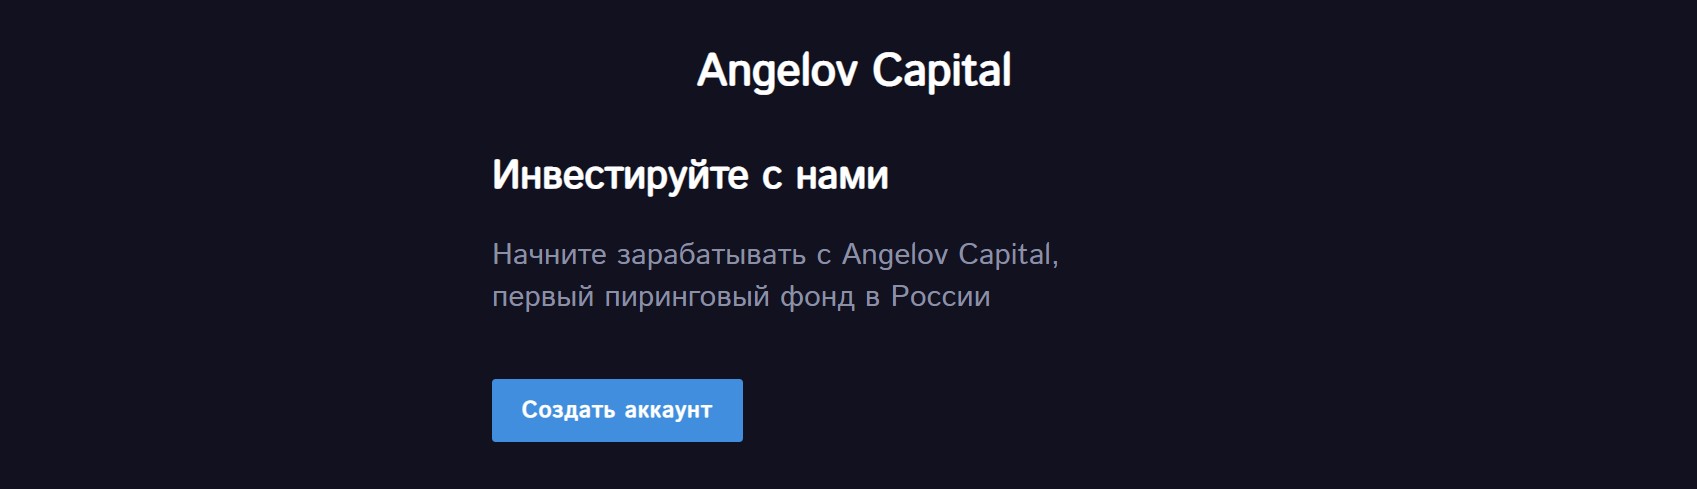 Внешний вид сайта Angelovcapital ru